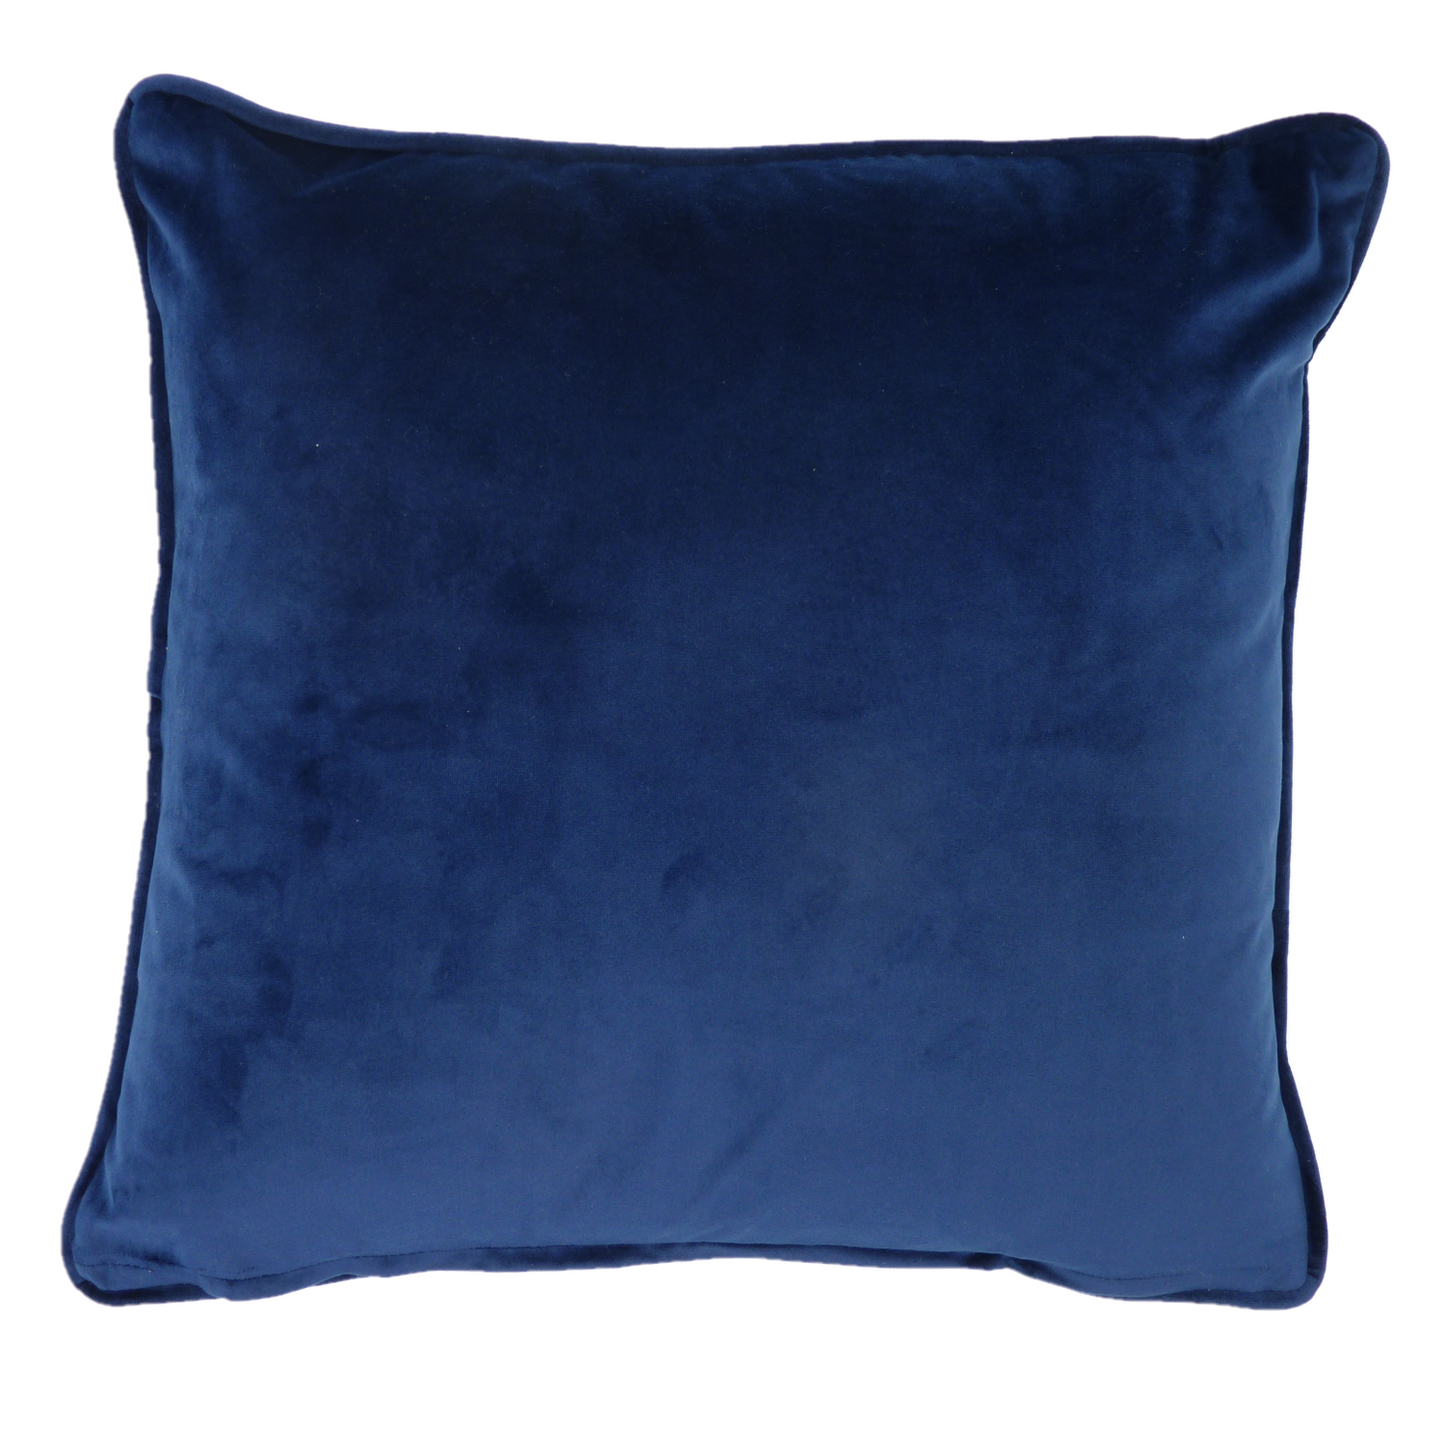 Polaris Navy Blue Textured Weave Velvet Cushion Cover (45cm x 45cm)